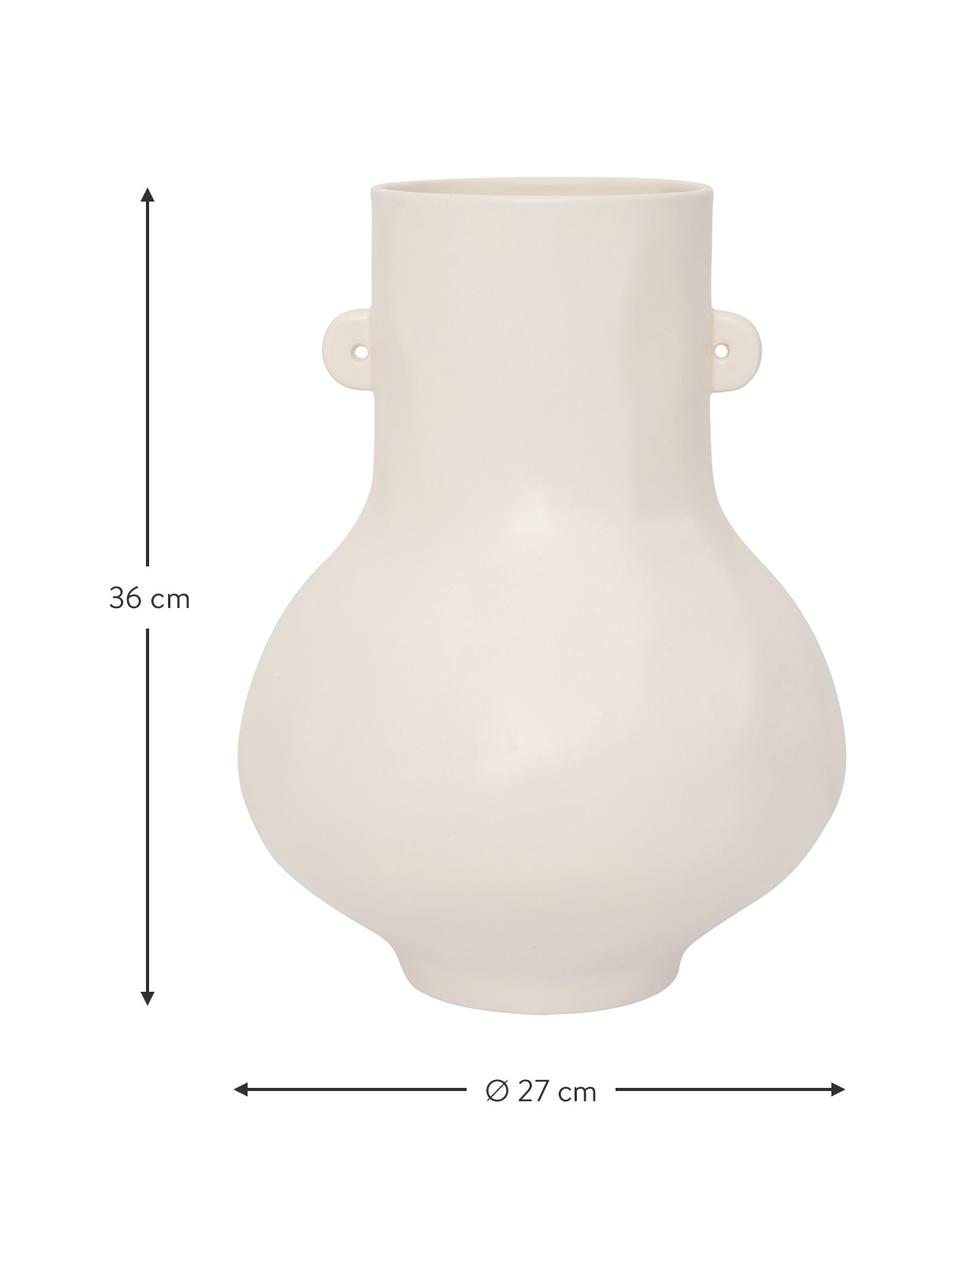 Handgefertigte Keramik-Vase Still in Weiß, Keramik, Gebrochenes Weiß, Ø 27 x H 36 cm